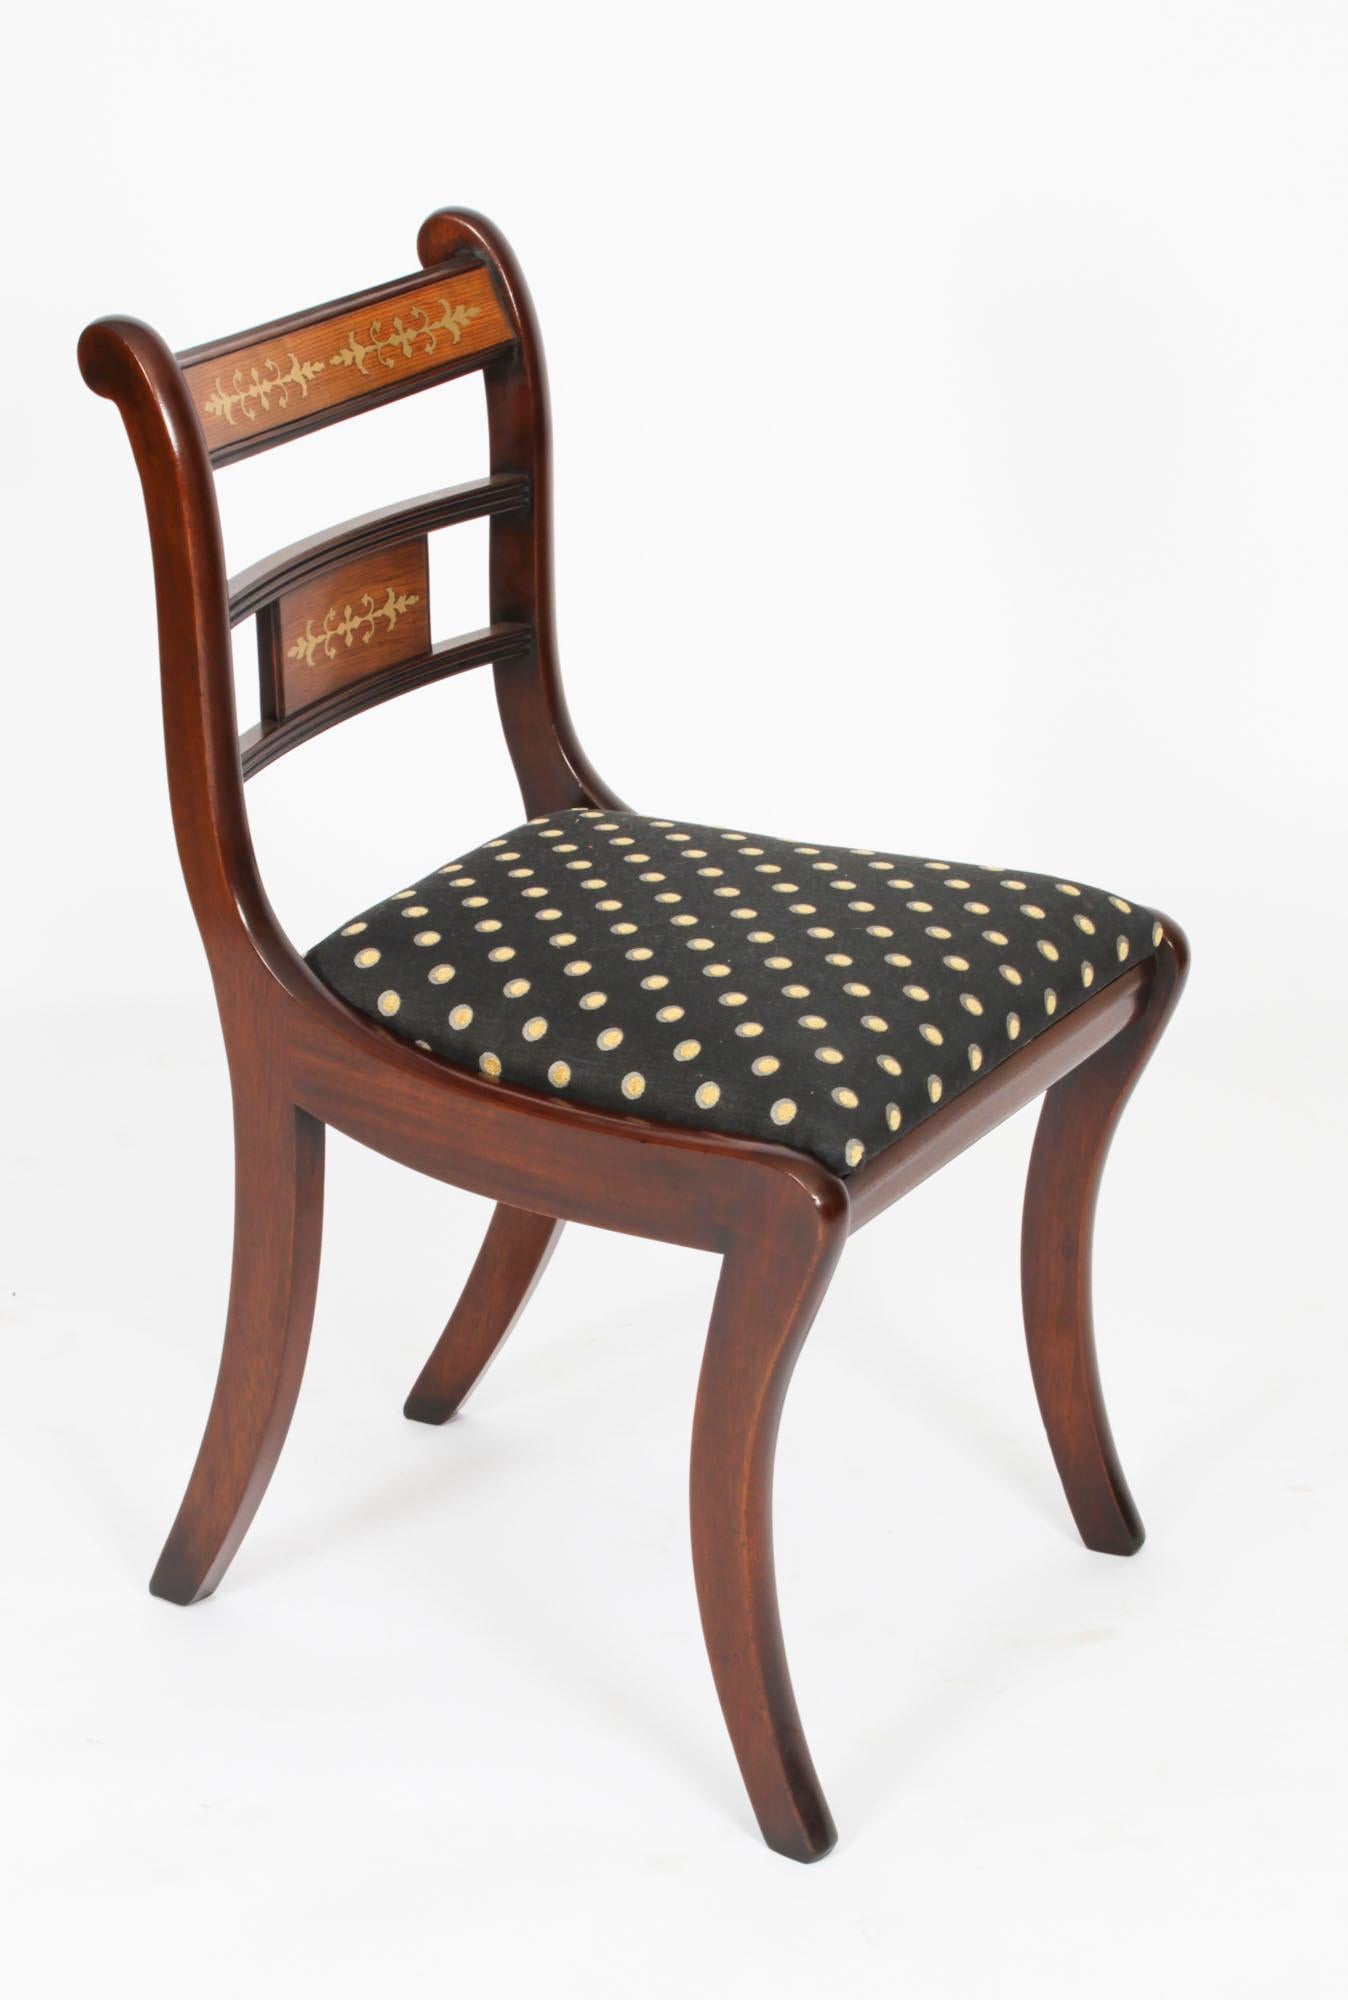 Ein absolut hervorragender englischer Vintage-Satz von zehn Esszimmerstühlen mit Messingintarsien im Regency-Revival-Stil aus dem späten 20.

Diese Stühle wurden in meisterhafter Handarbeit aus massivem, durchgehend geflammtem Mahagoni gefertigt,